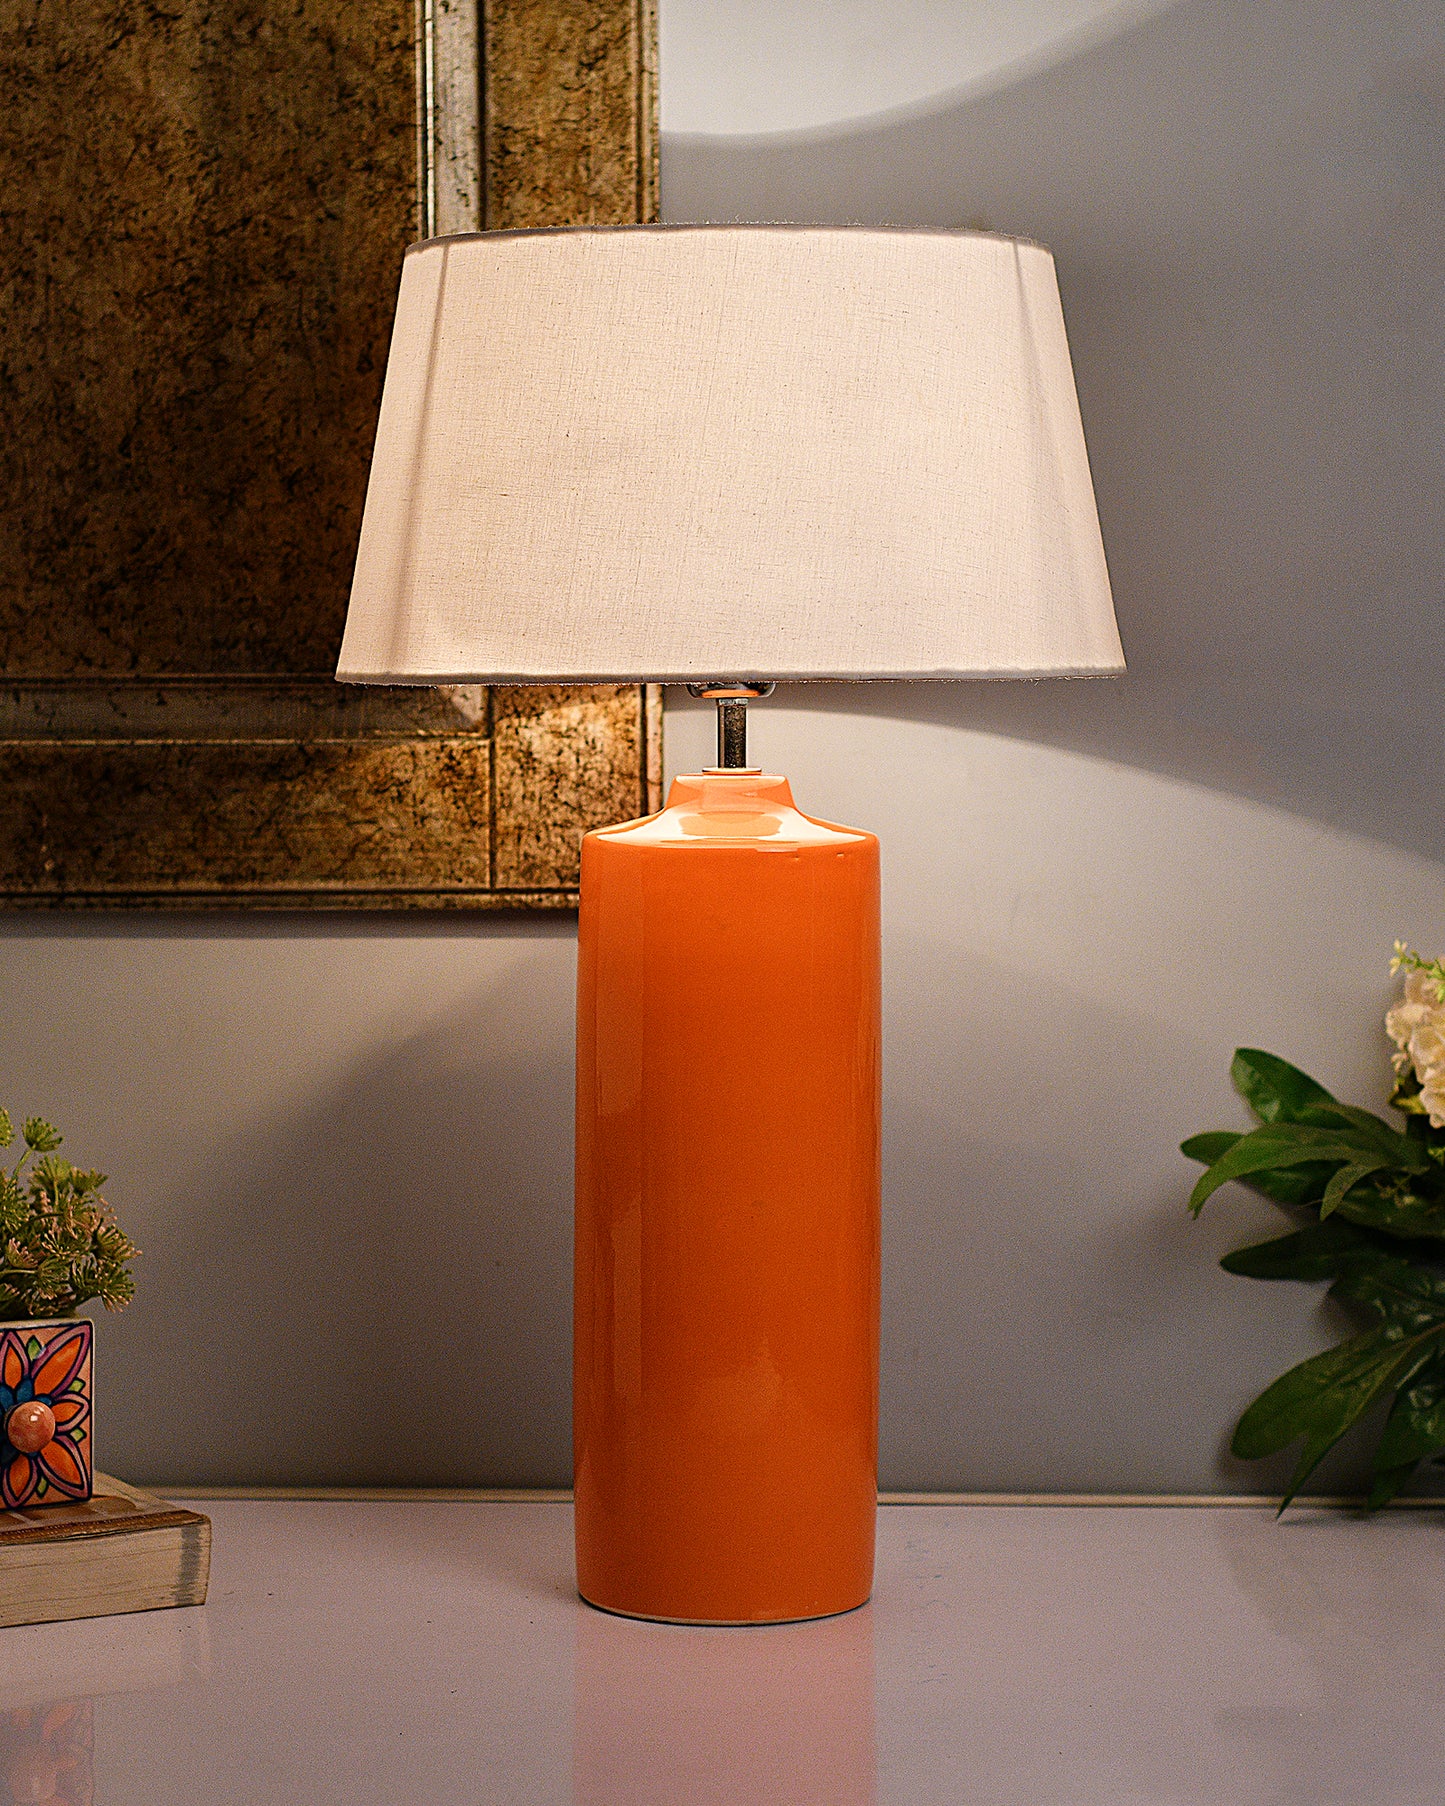 Ceramic Base Orange Table Lamp with Drum Shade, LED Bulb